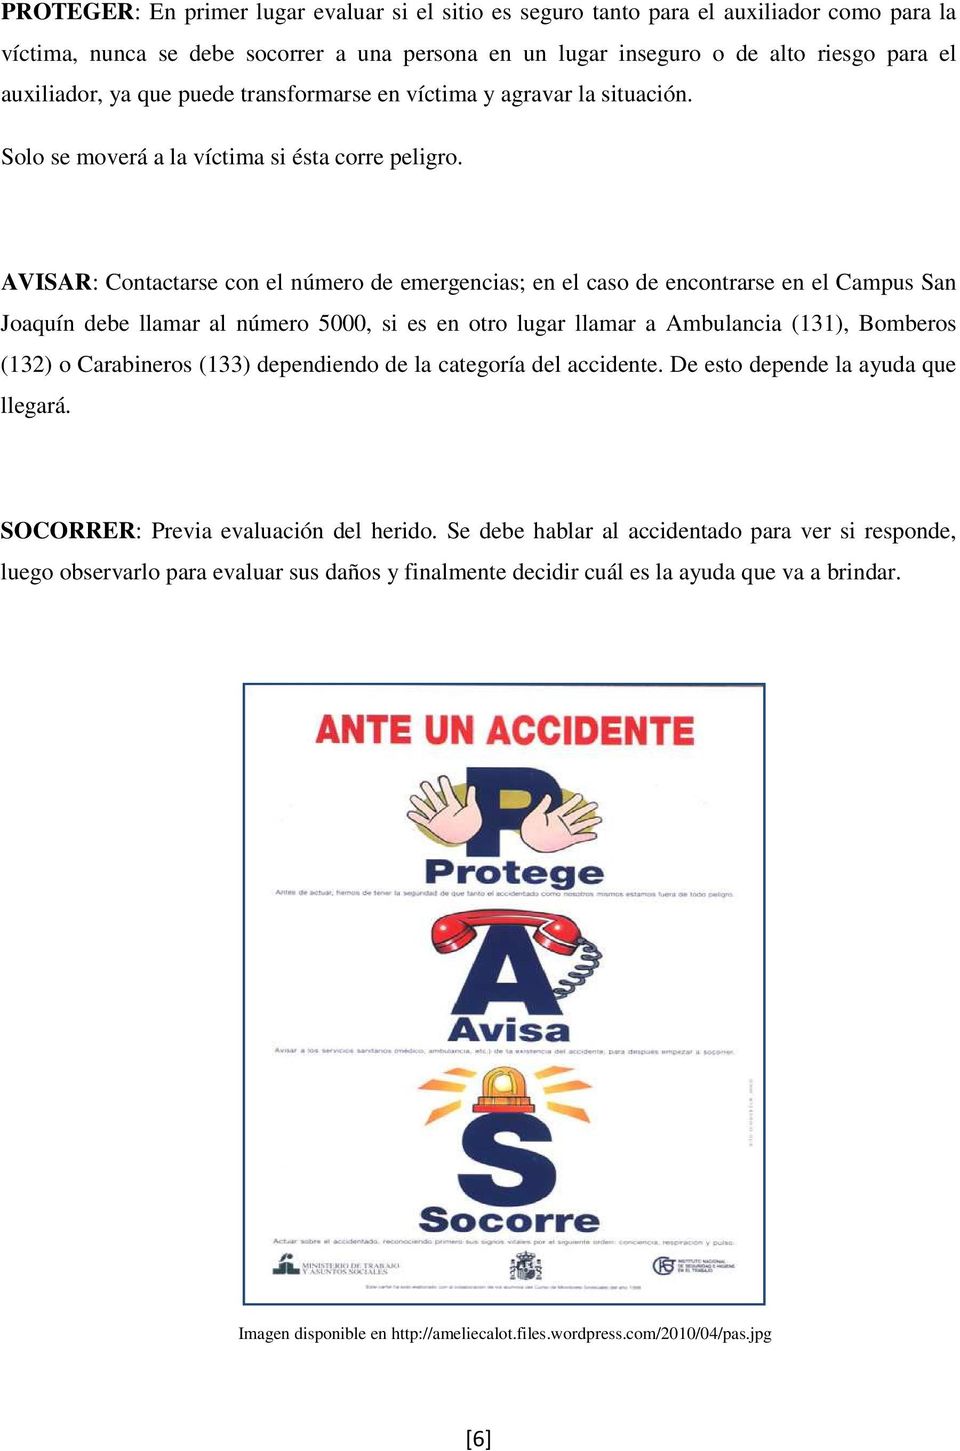 AVISAR: Contactarse con el número de emergencias; en el caso de encontrarse en el Campus San Joaquín debe llamar al número 5000, si es en otro lugar llamar a Ambulancia (131), Bomberos (132) o